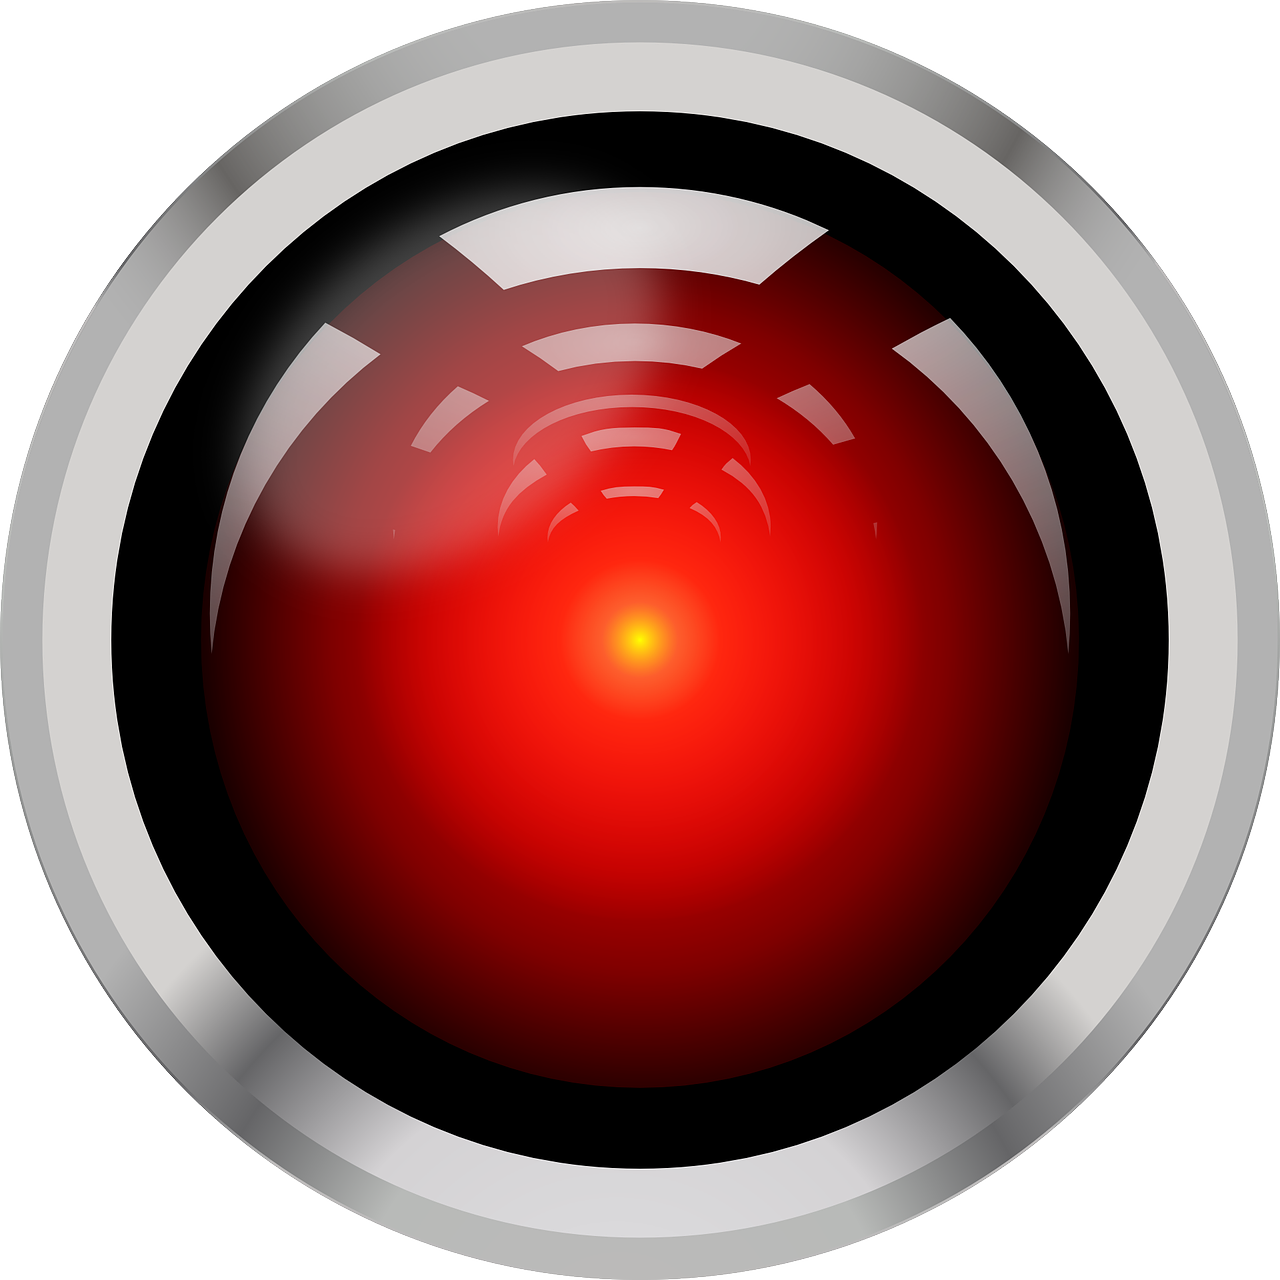 Hal, 9000, Fotoaparatas, Optinis, Kompiuteris, Mokslinė Fantastika, Objektyvas, Raudona, Saugumas, Stebėjimas